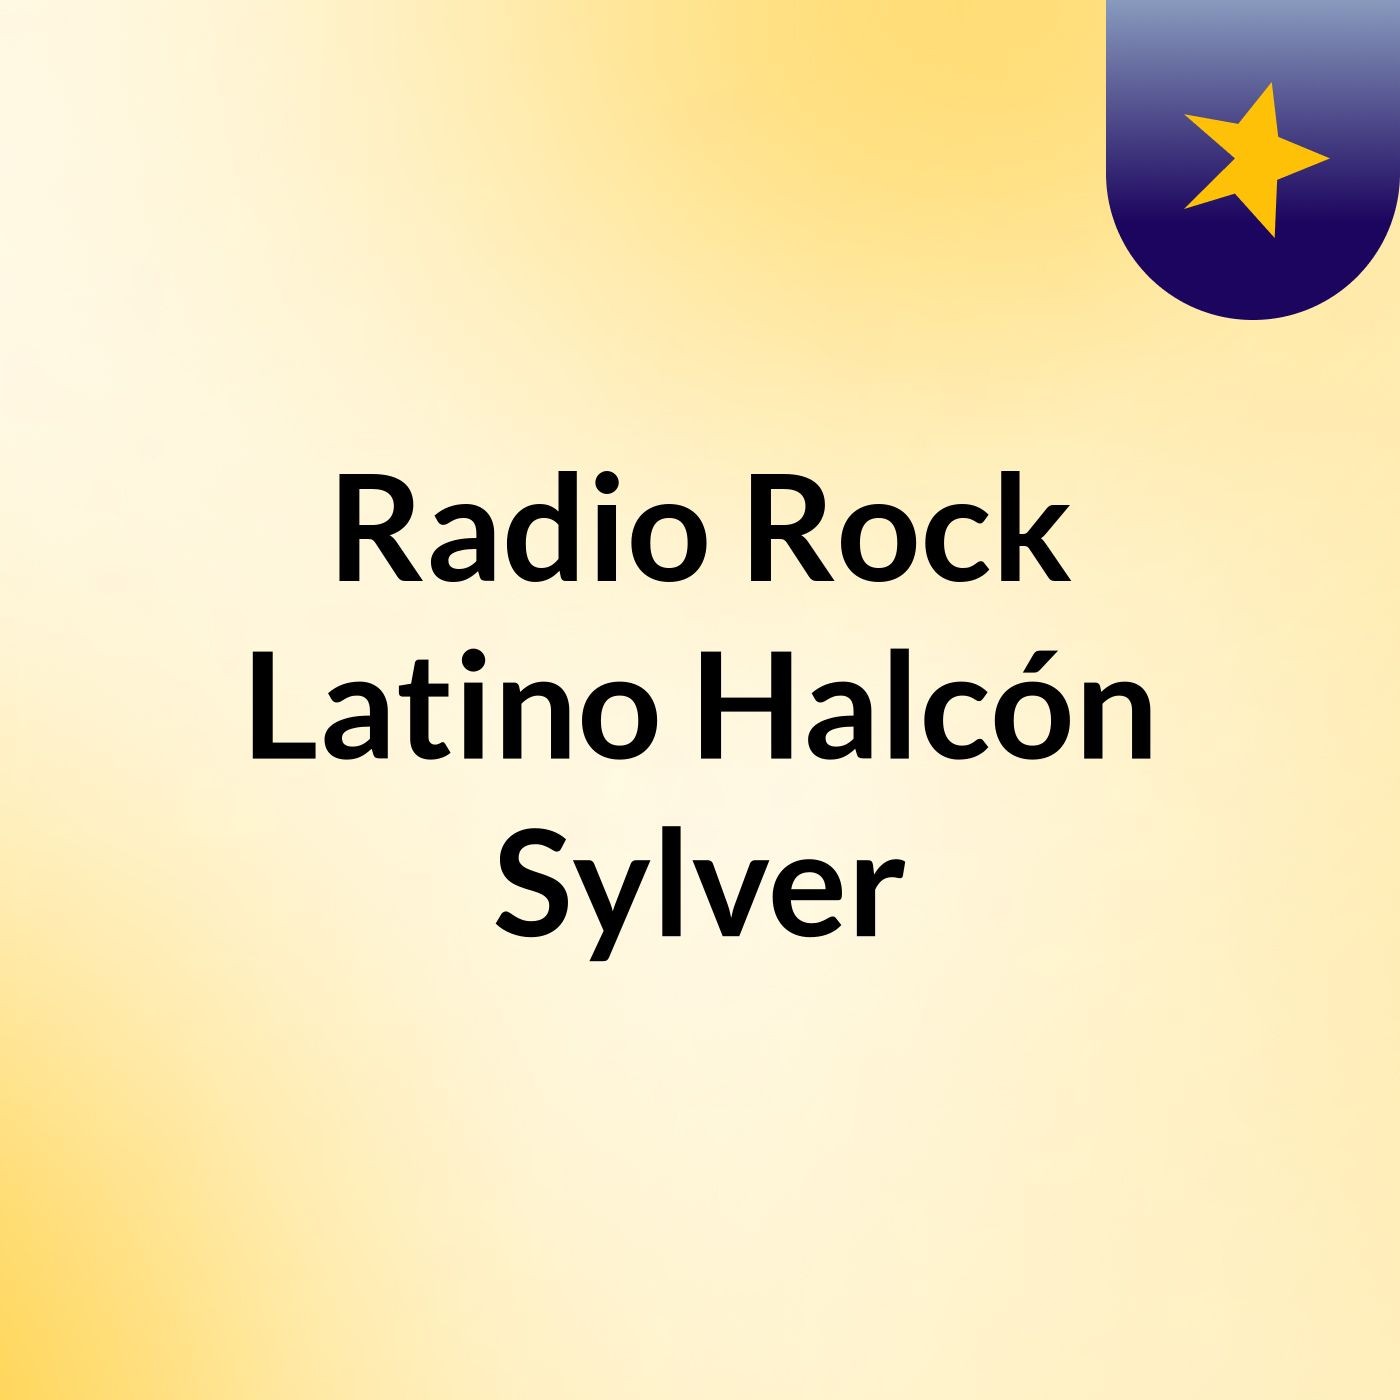 Radio Rock Latino Halcón Sylver